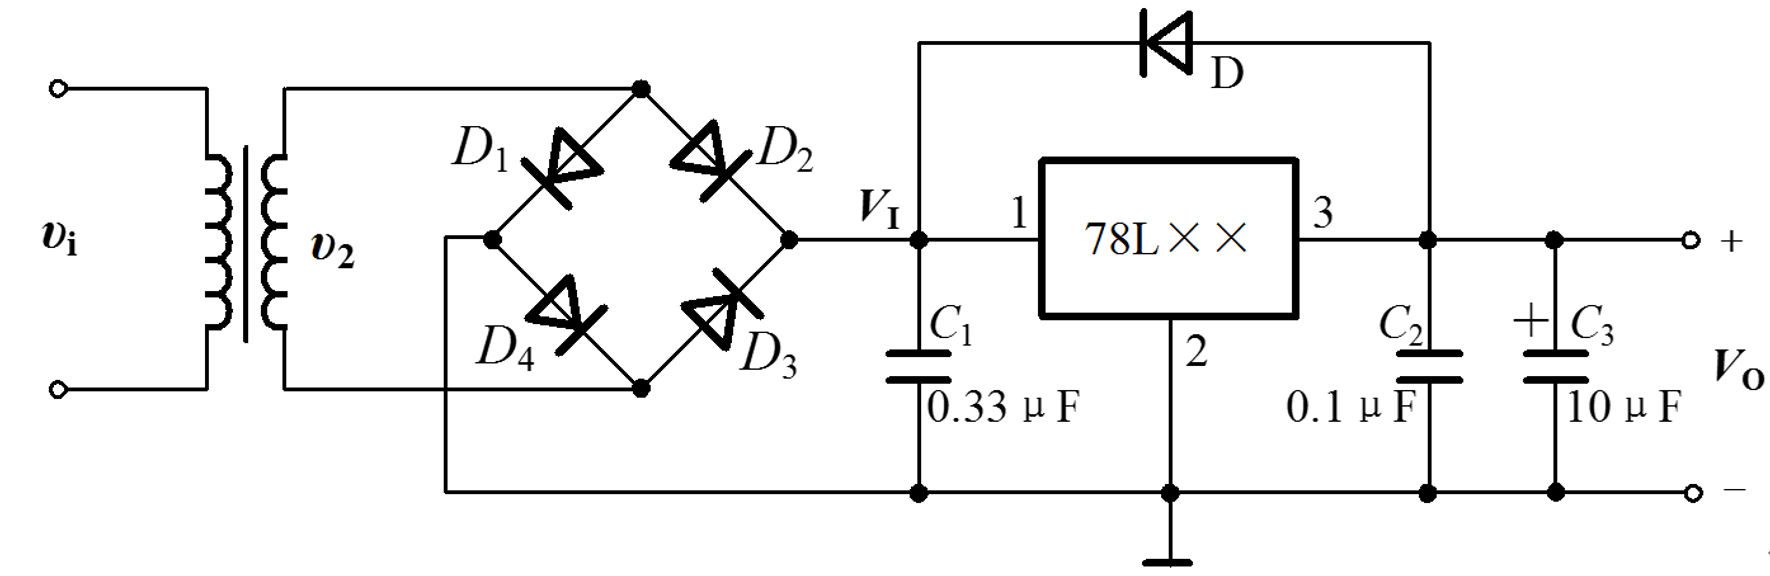 三端线性稳压器工作原理与典型应用电路分析——78xx与lm317